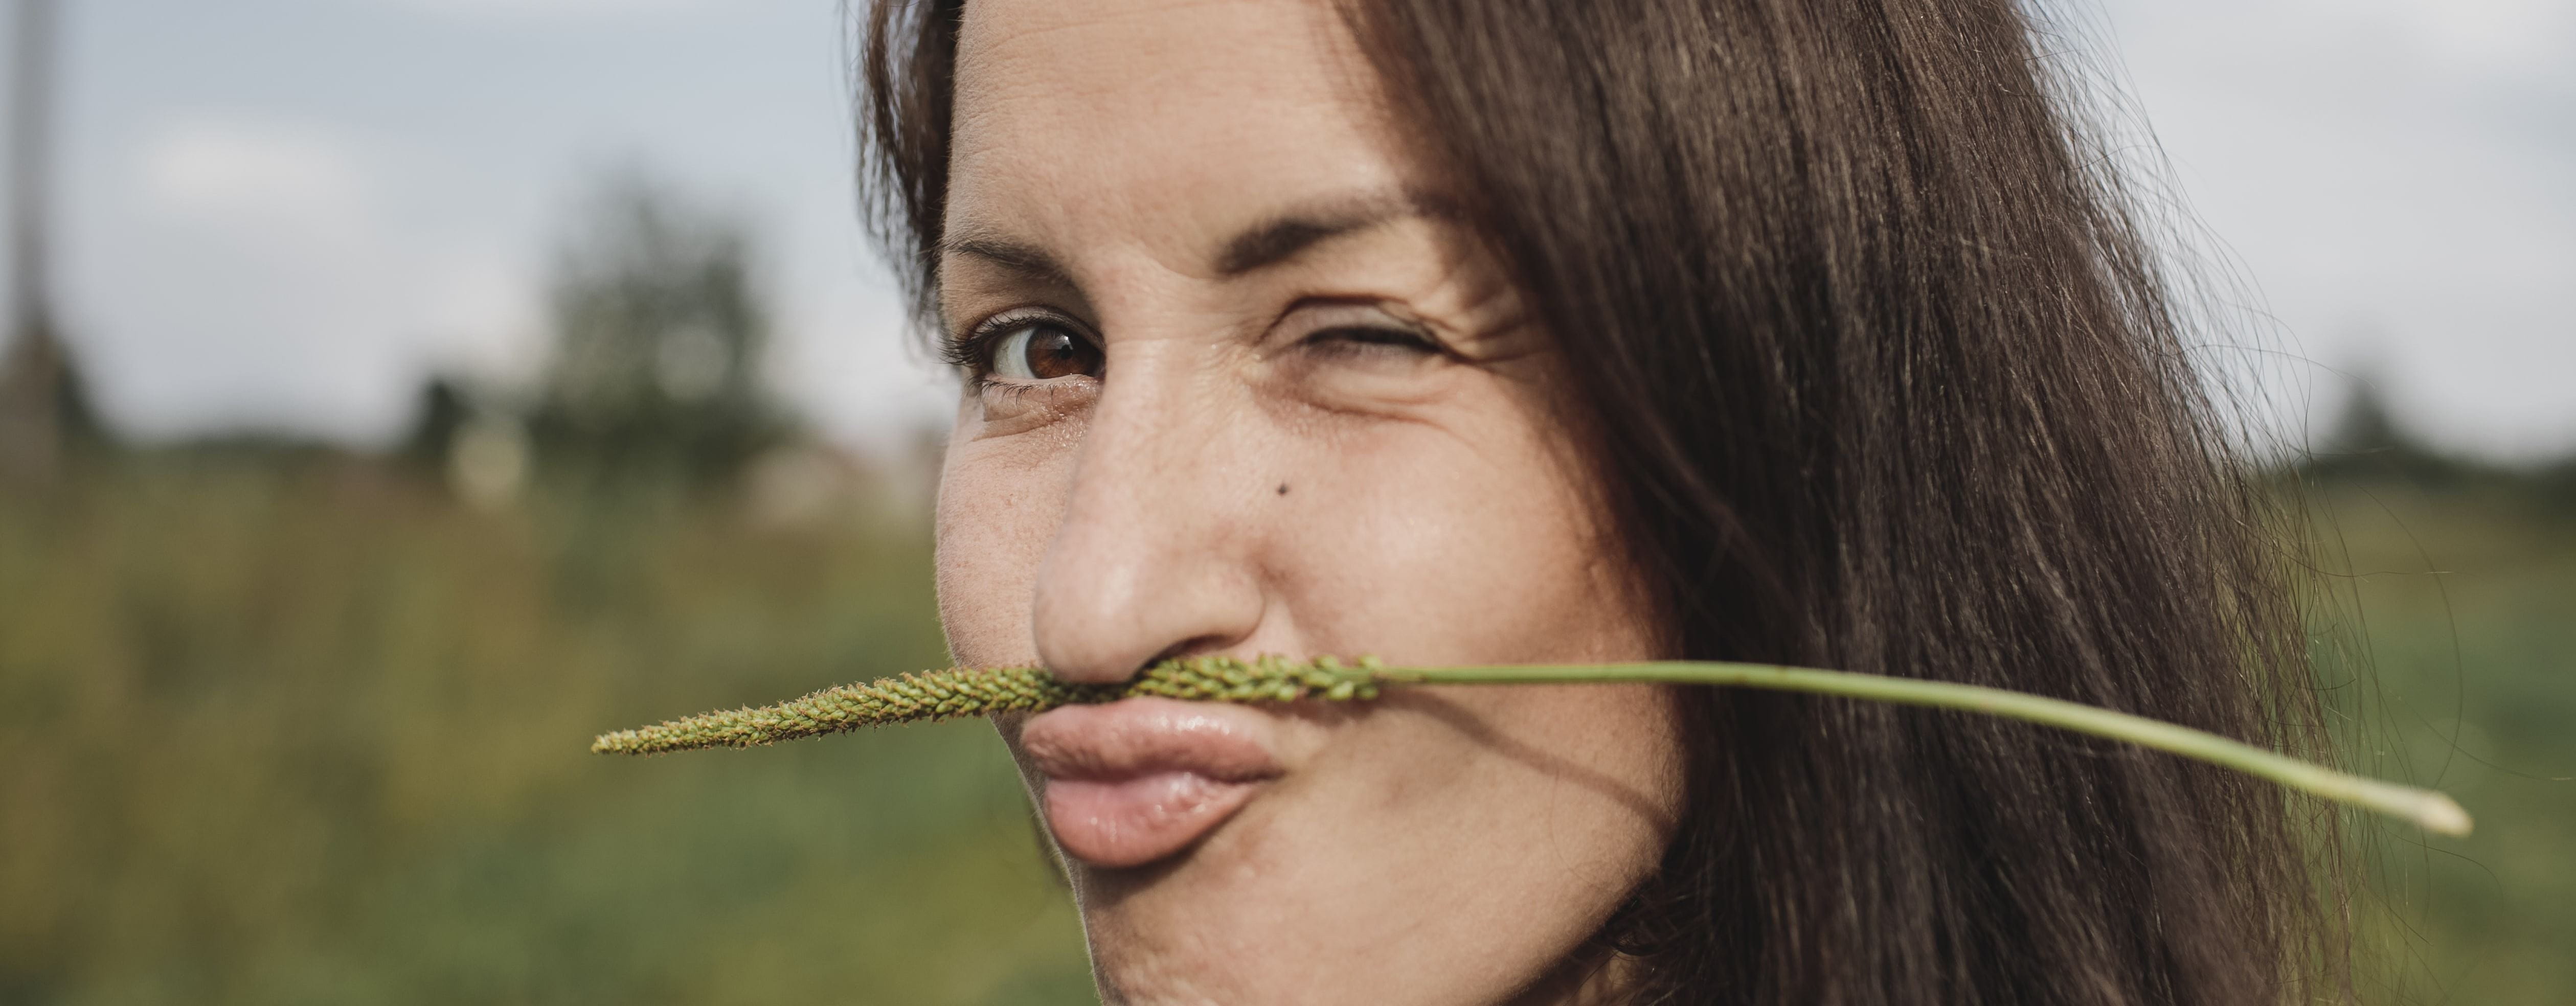 mulher com uma planta seca a fazer de bigode